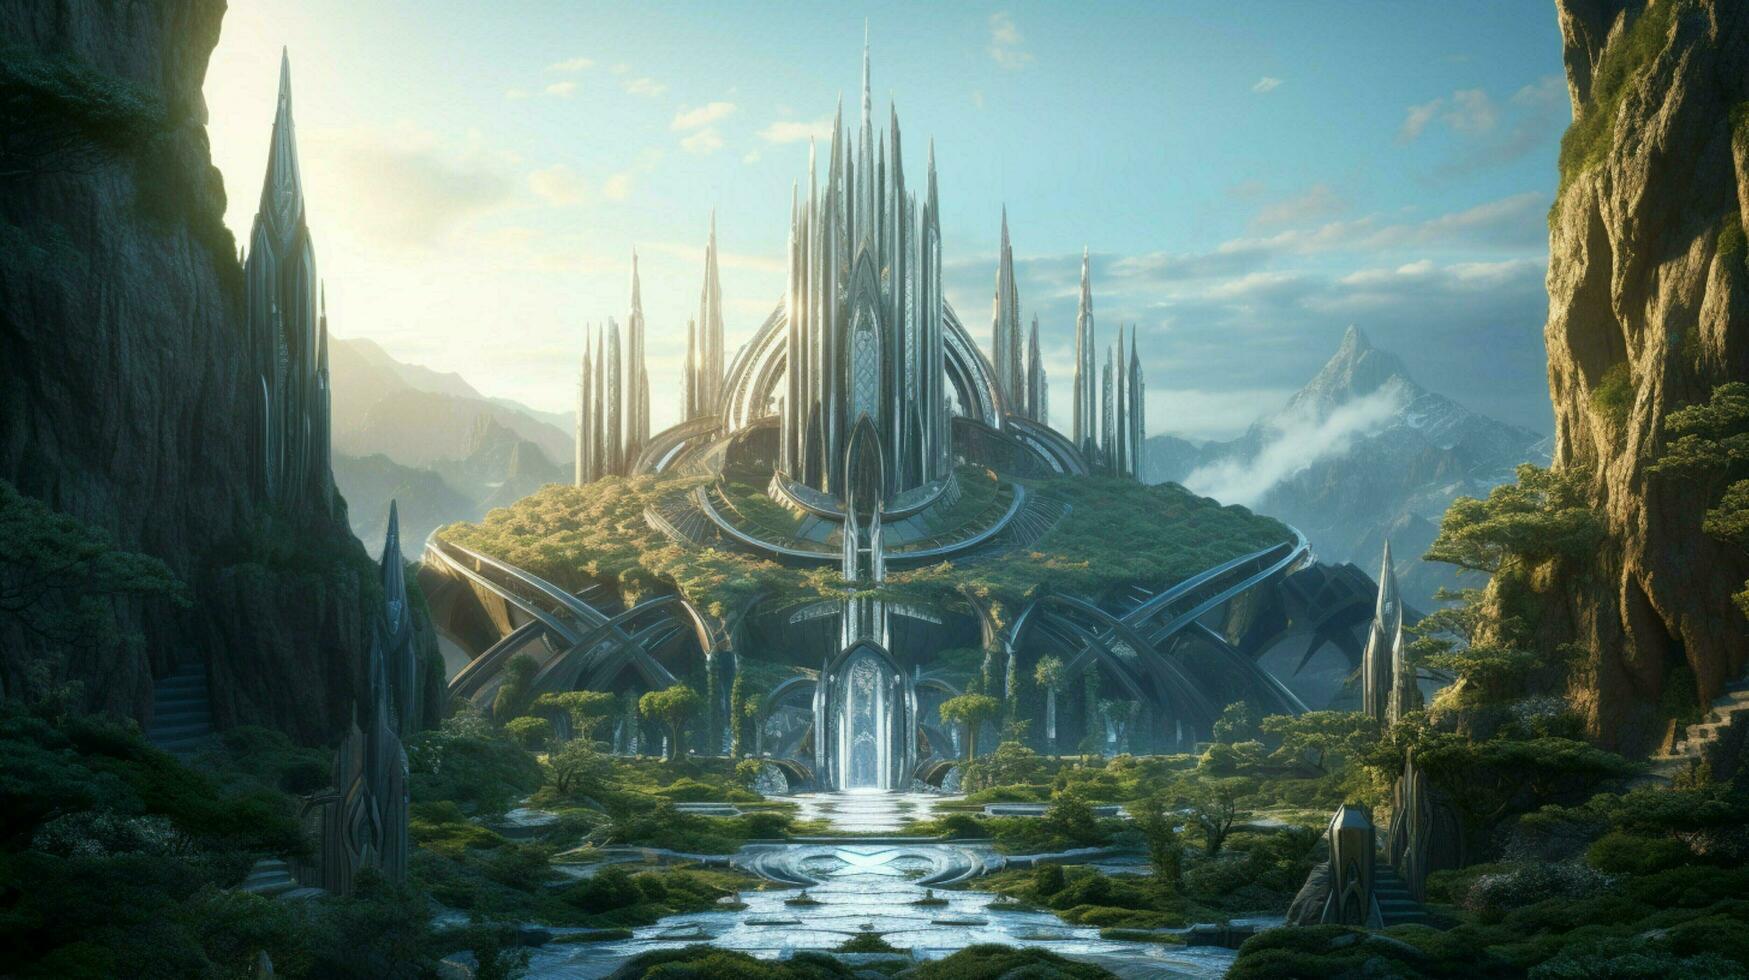 een futuristische elven kasteel in een magisch Woud foto